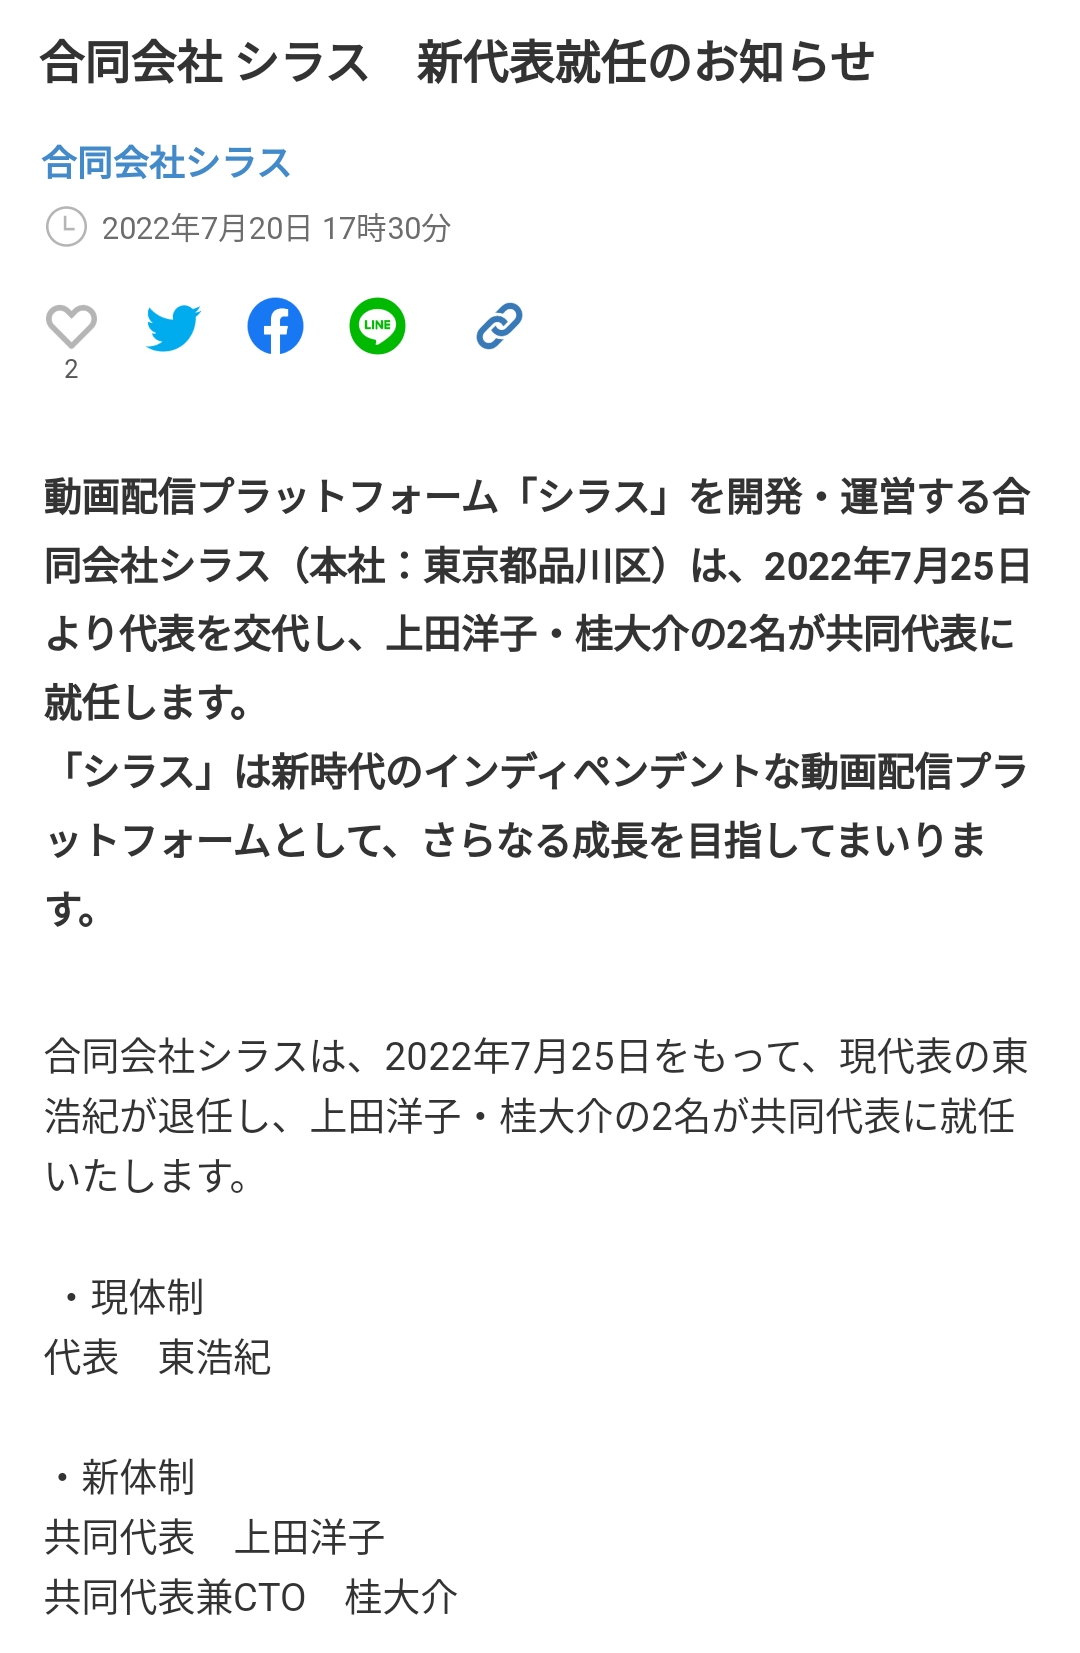 【悲報】竹中平蔵さん、なぜかパソナに続きオリックスも辞める… [802034645]\n_1